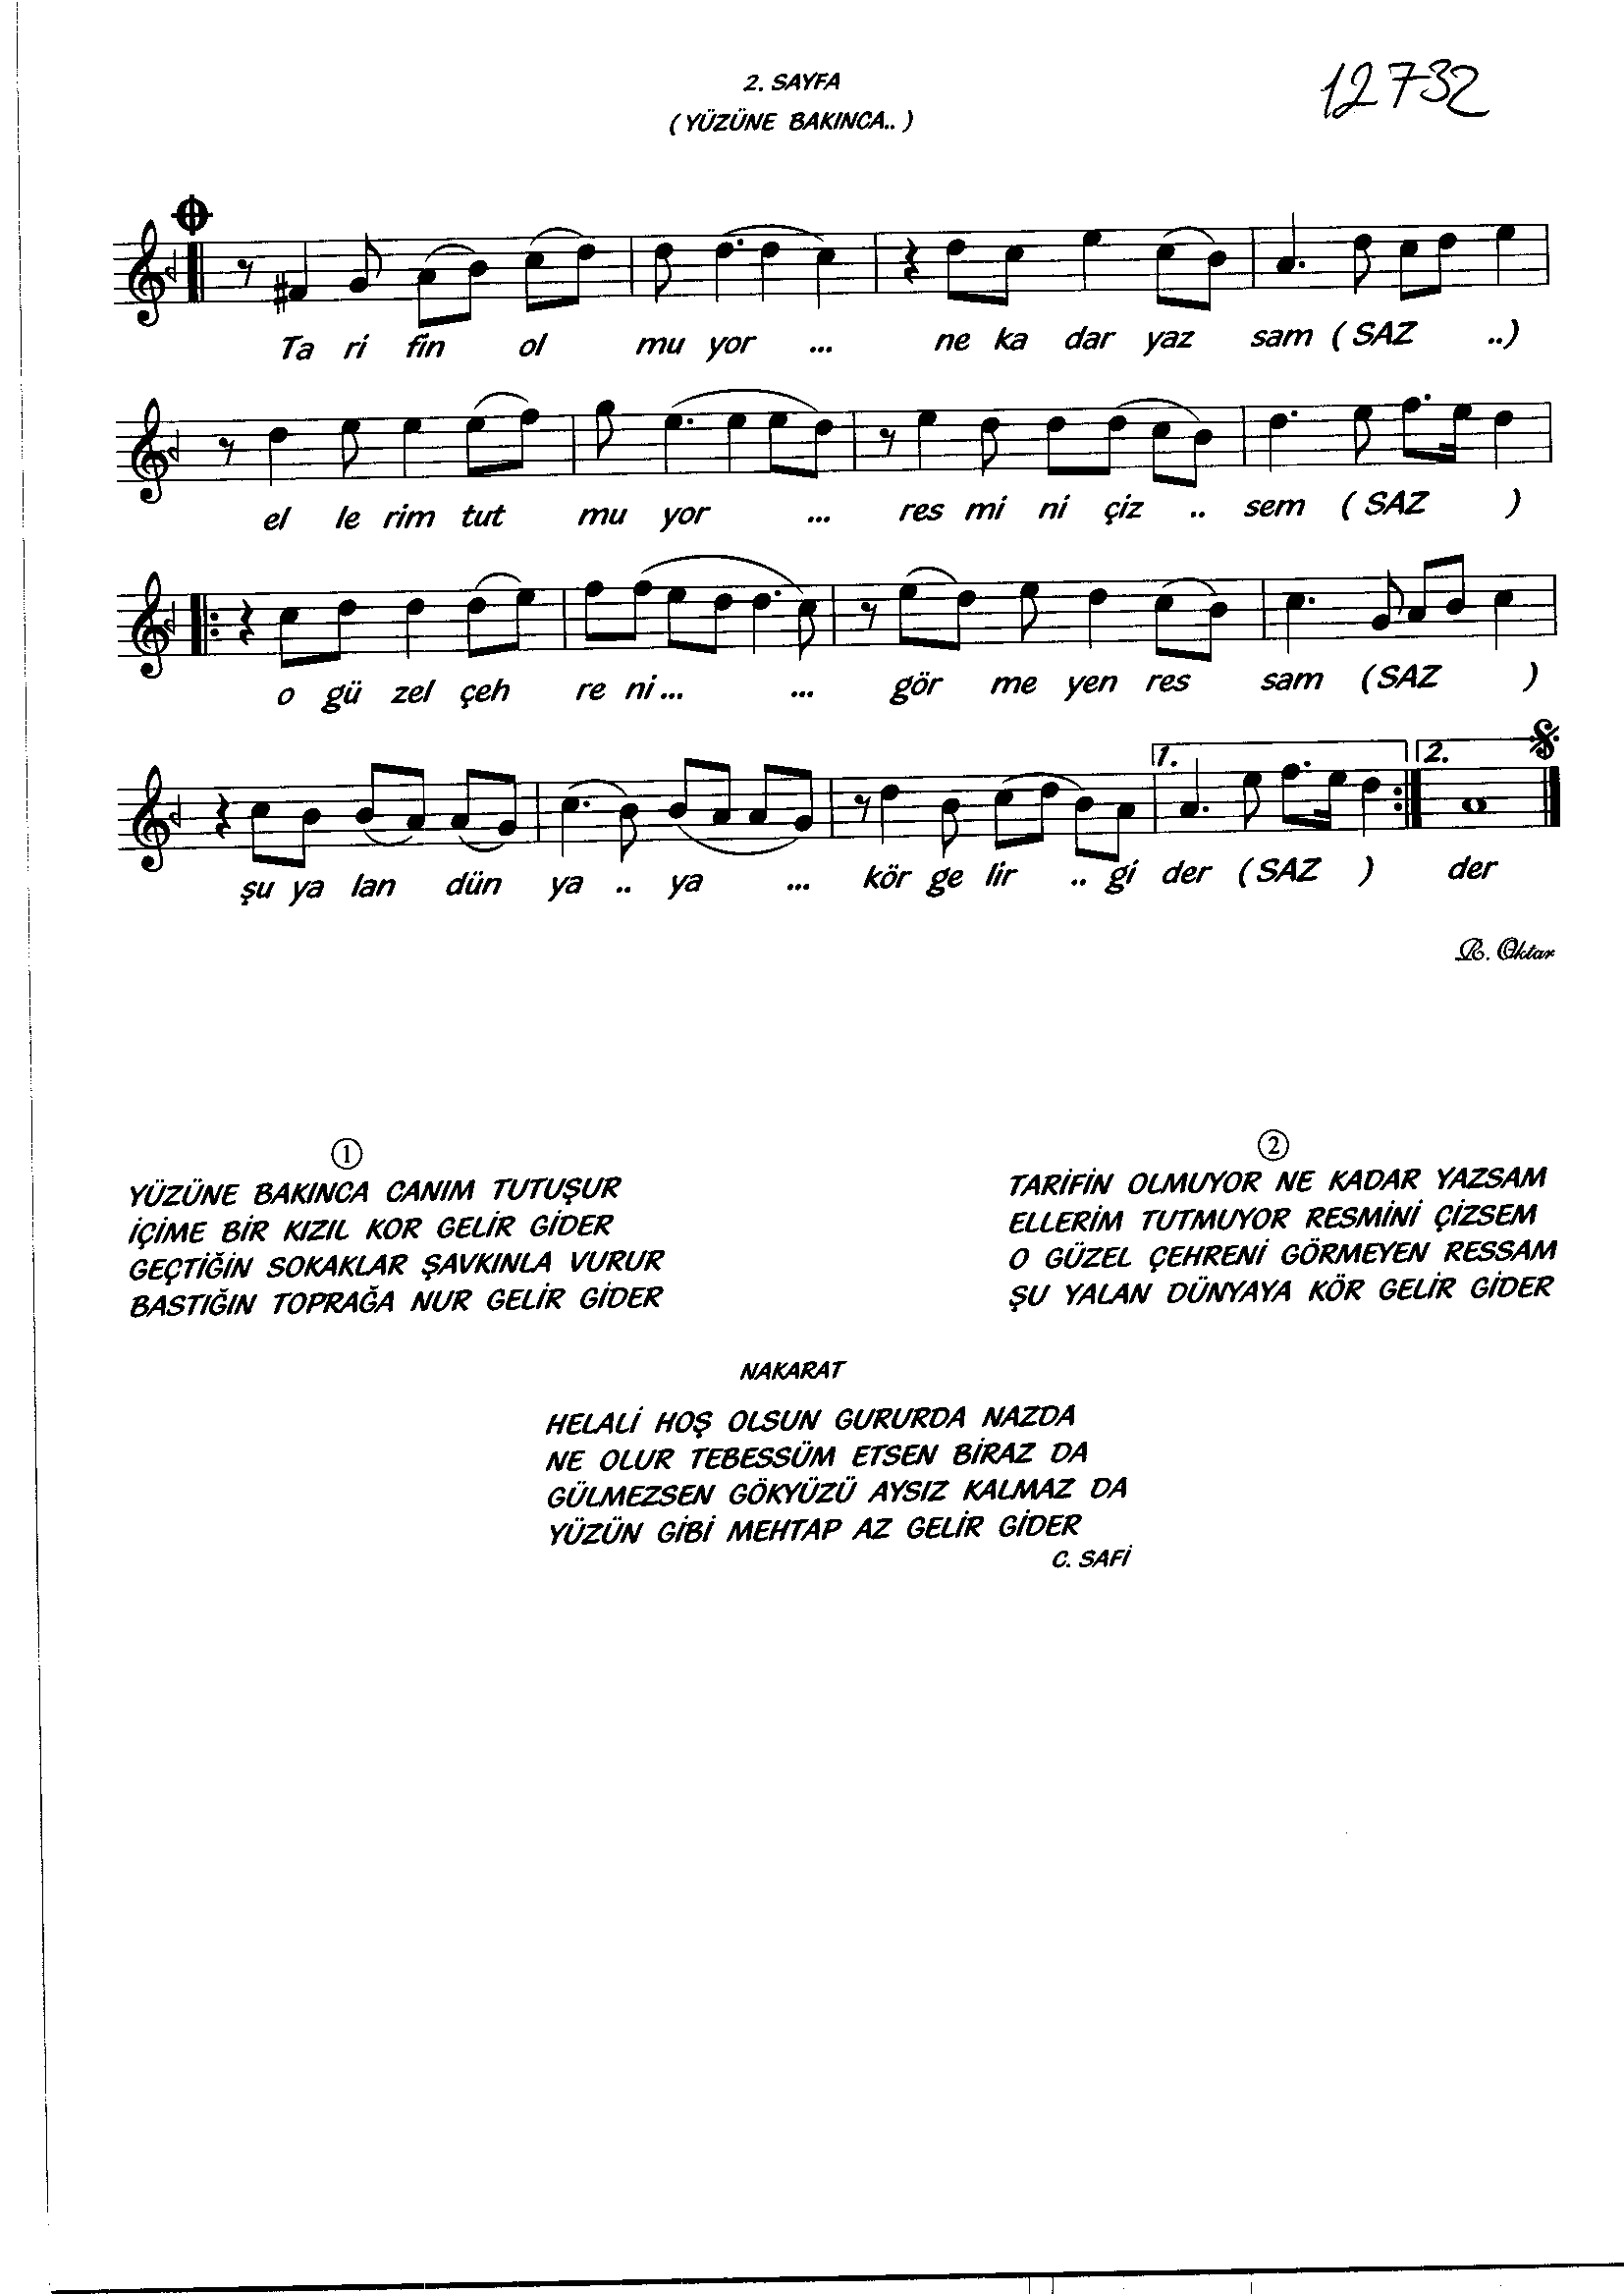 Uşşak - Şarkı - Zekâi Tunca - Sayfa 2